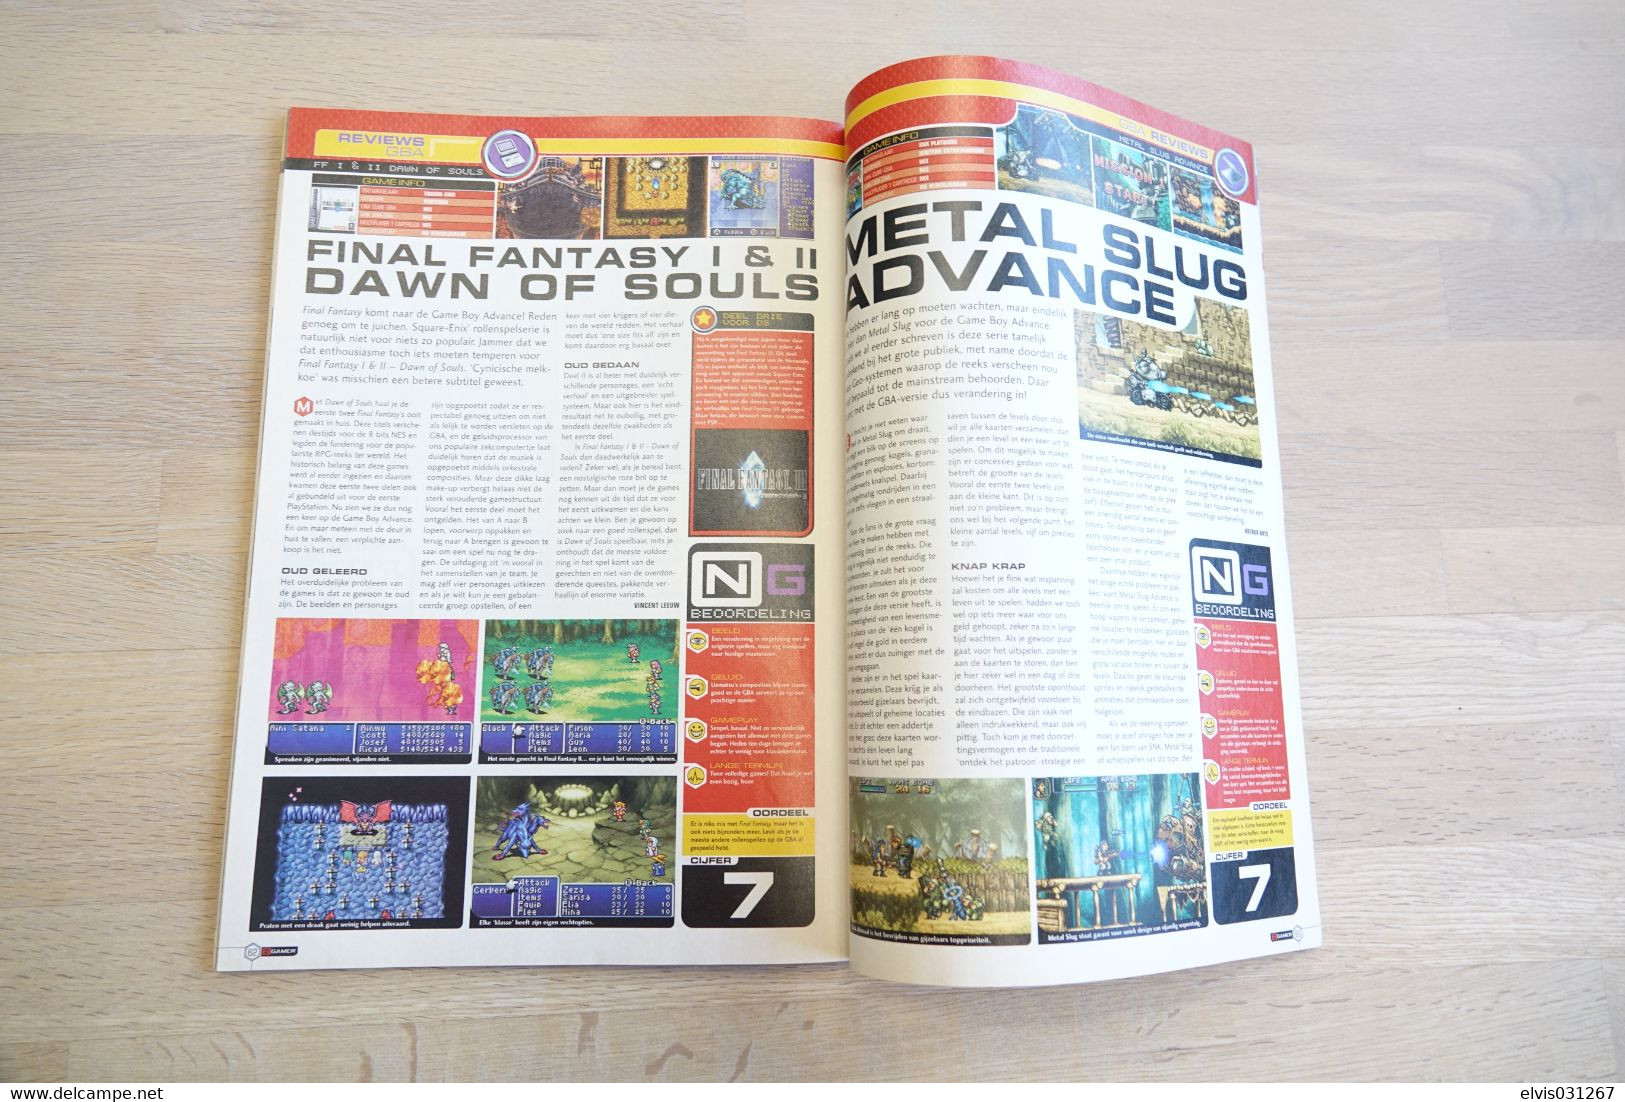 NINTENDO MAGAZINE : N Gamer N°6 2004 - Video Game - Retro - Literatur Und Anleitungen